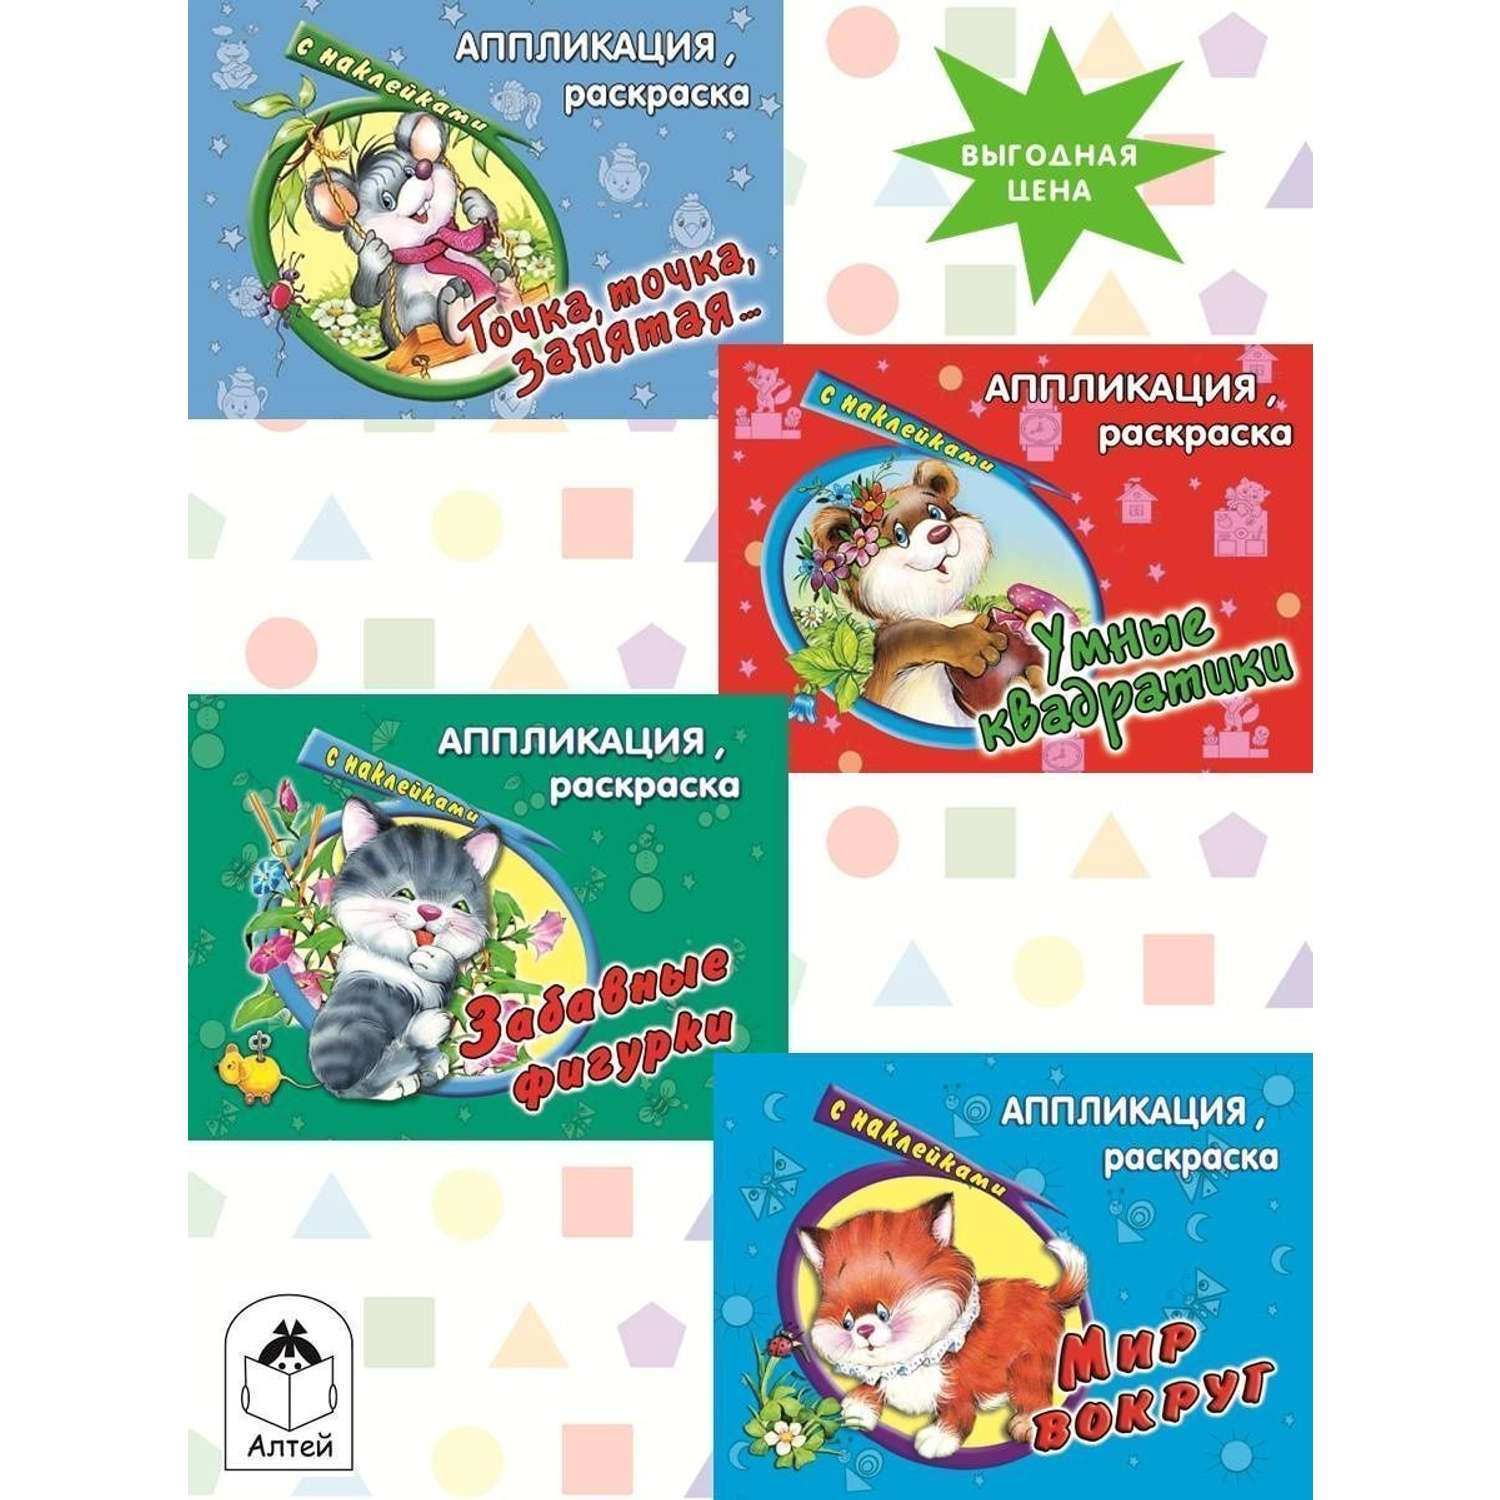 Книга Алтей Аппликация с наклейками для детей набор 4 шт. - фото 1